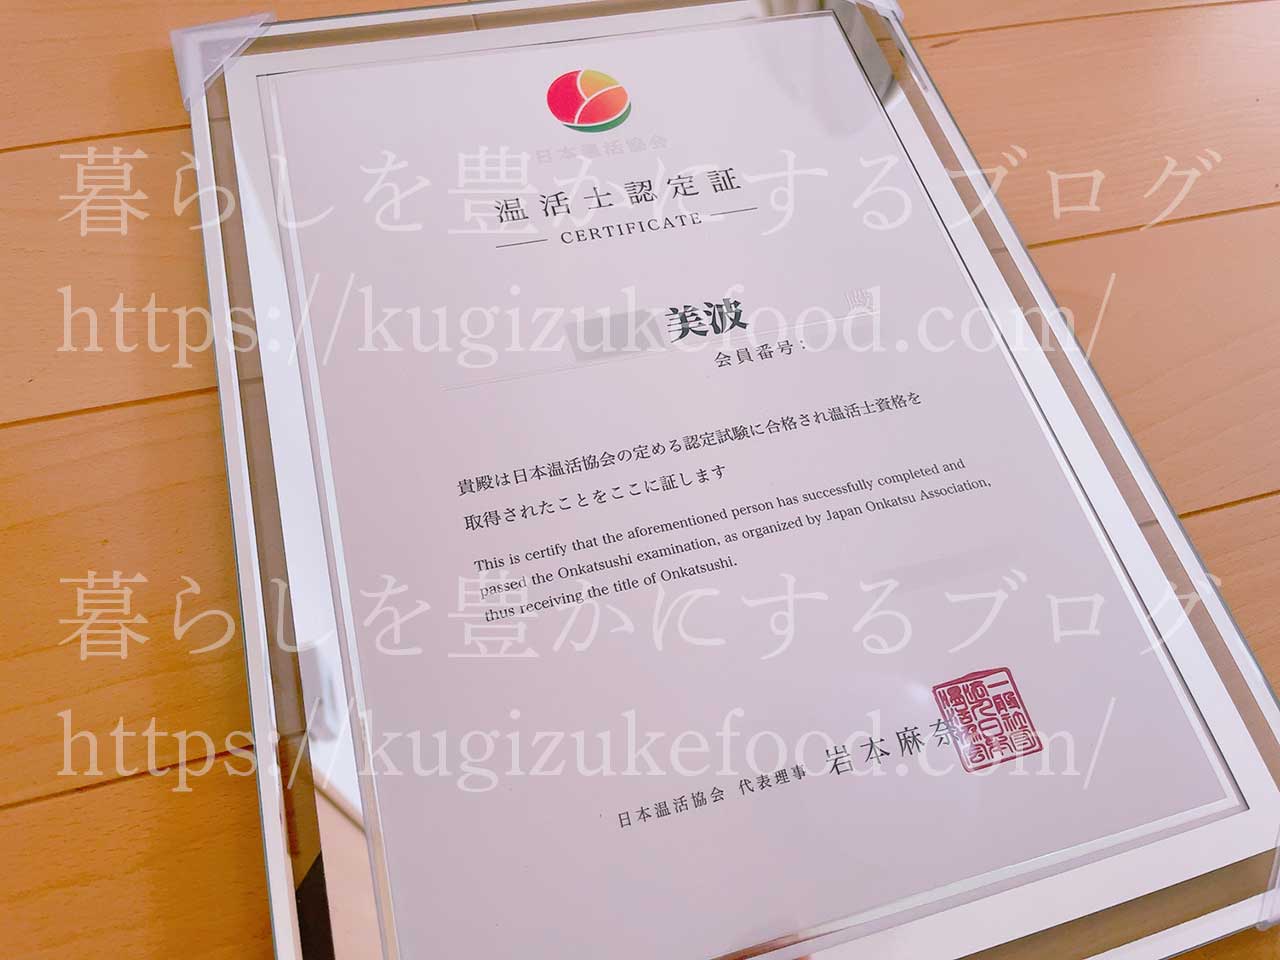 日本温活協会の温活士資格合格認定証